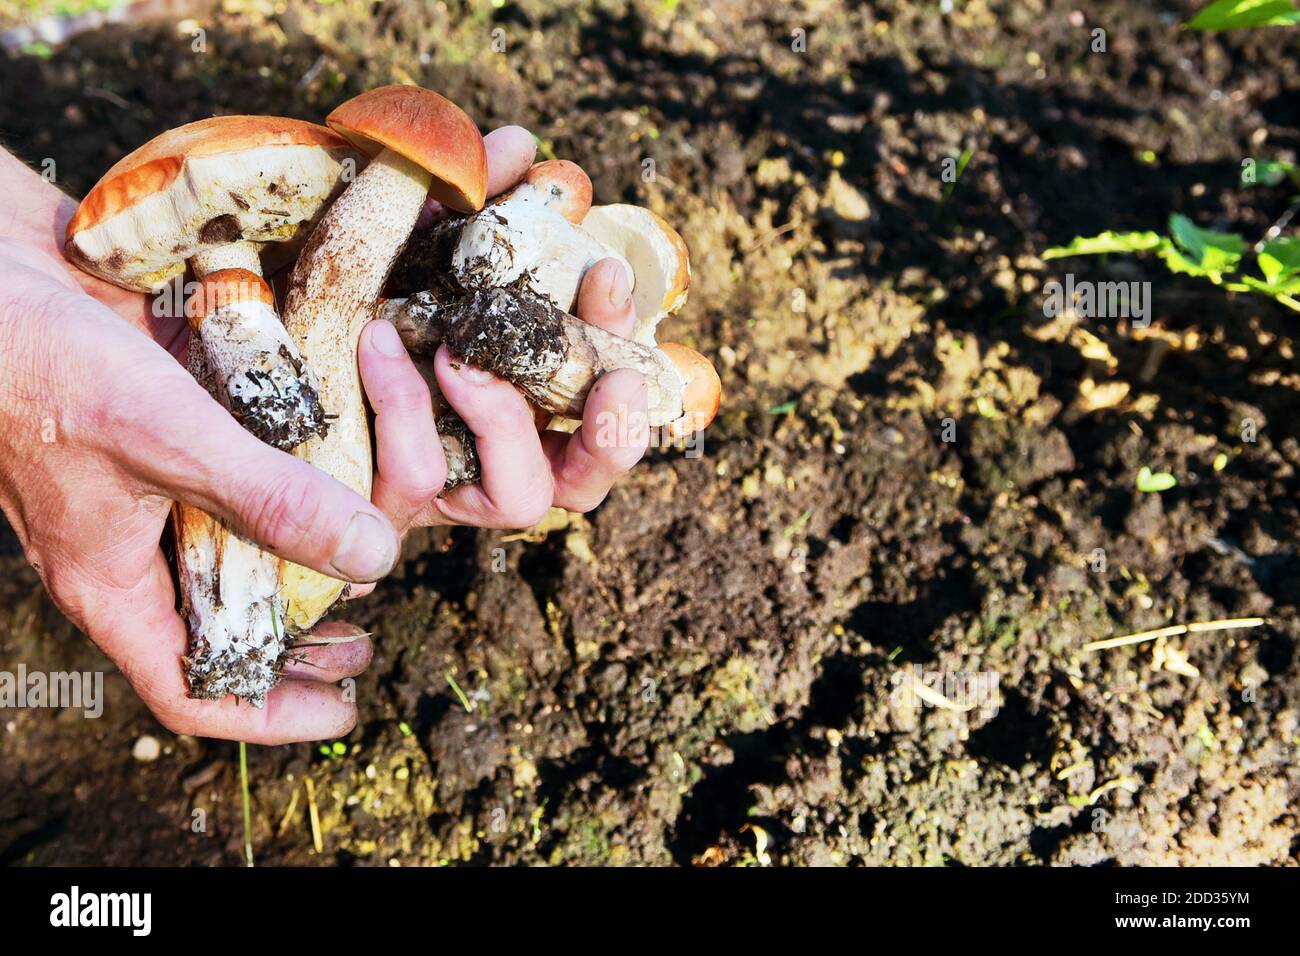 Champignons de la forêt collectés dans vos mains. Les mains des hommes tiennent des champignons frais délicieux recueillis dans la forêt. Une poignée de champignons sauvages dans ses mains Banque D'Images